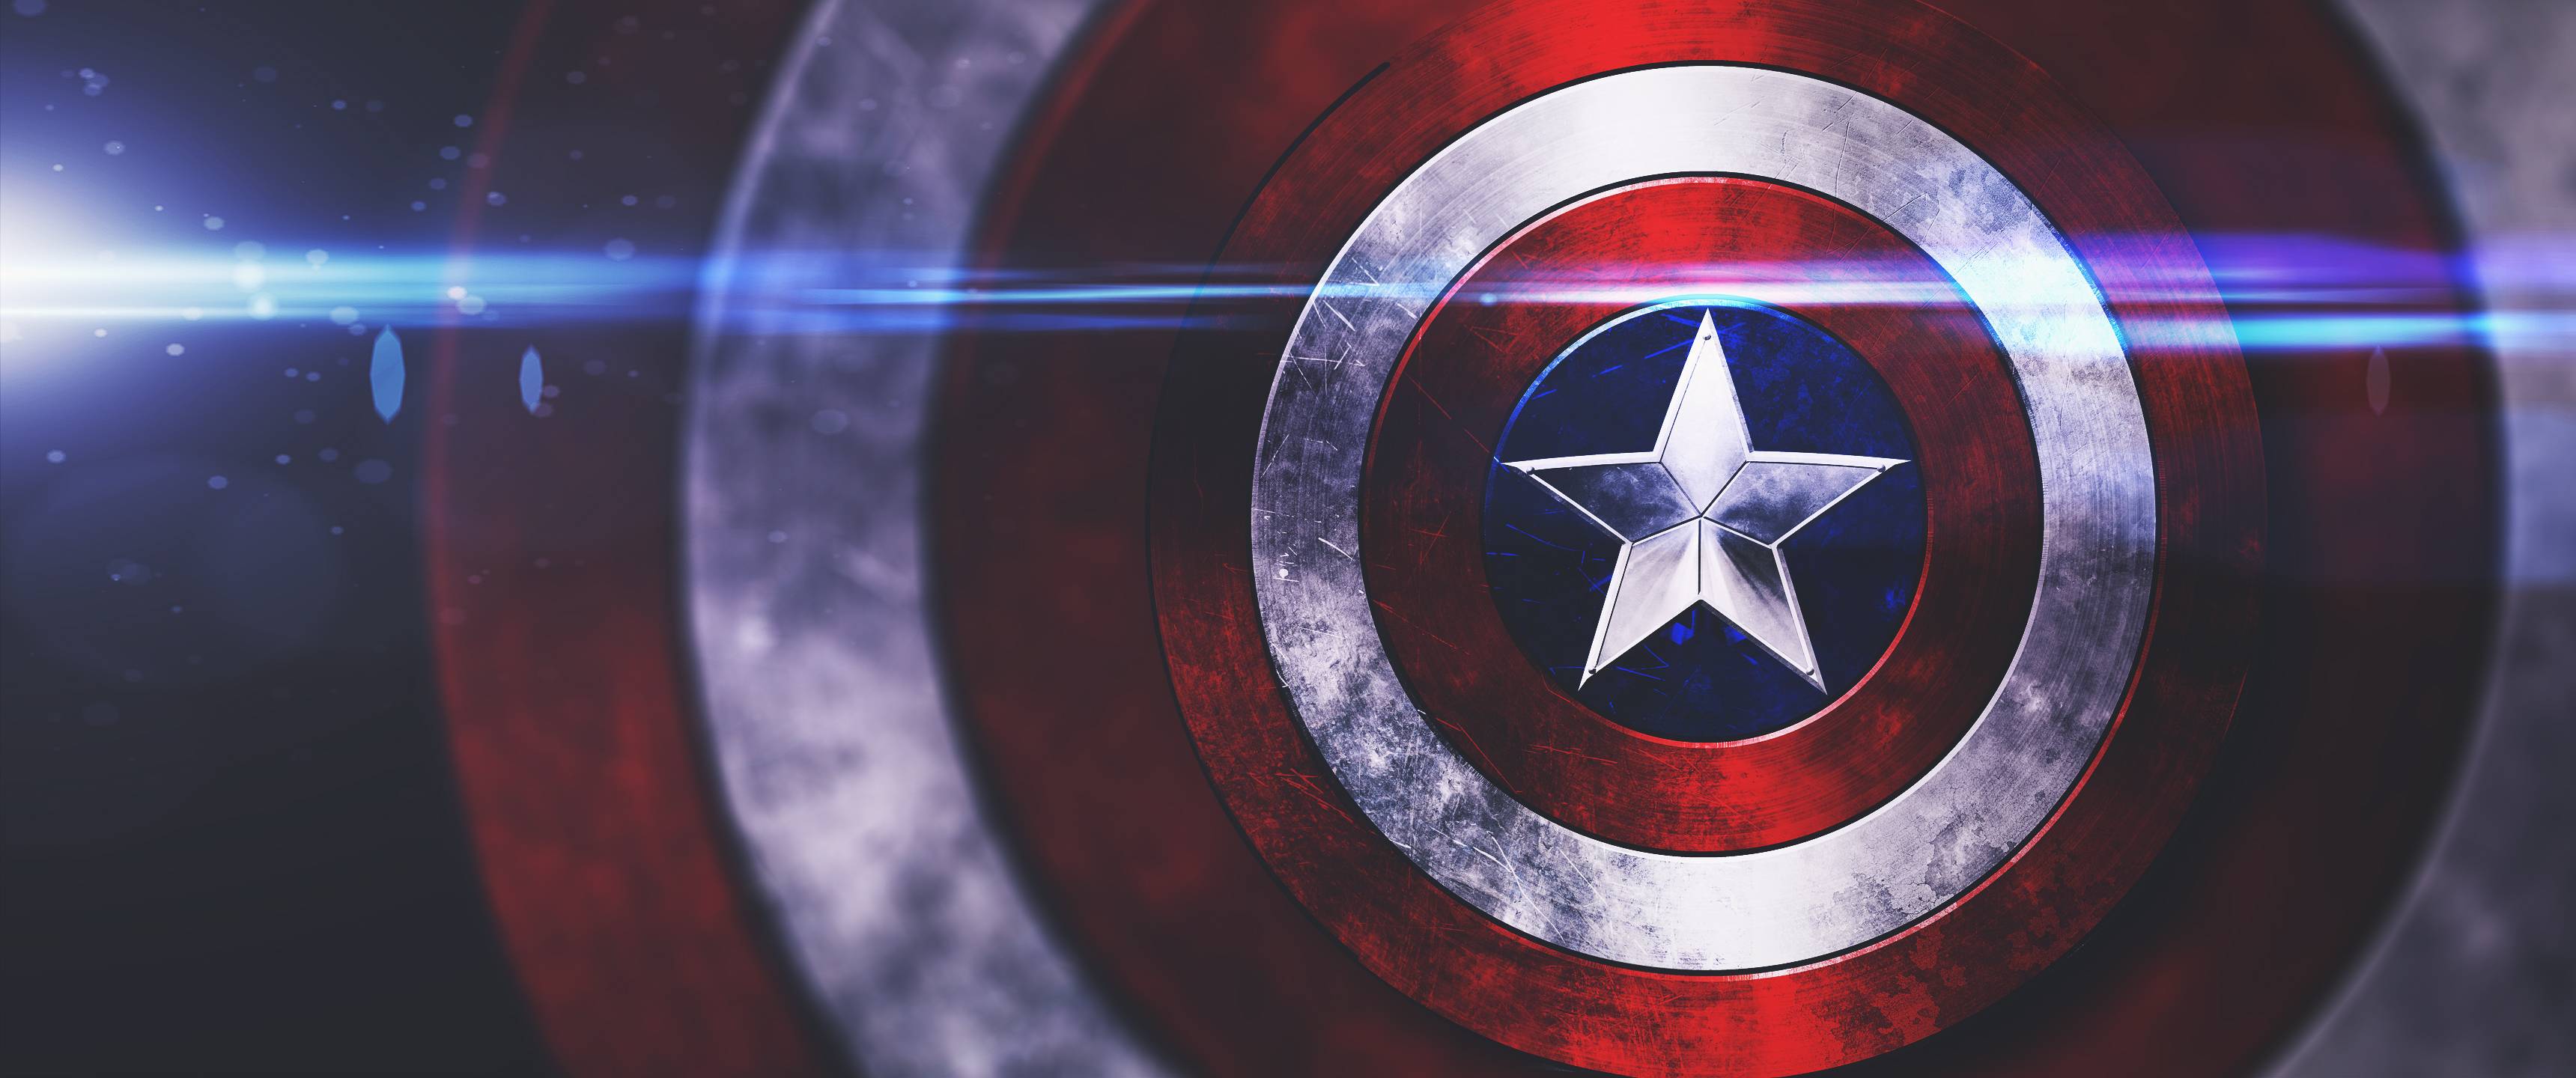 Capitán América escudo fondo de pantalla que hice en PS. [3440x1440] - Imgur